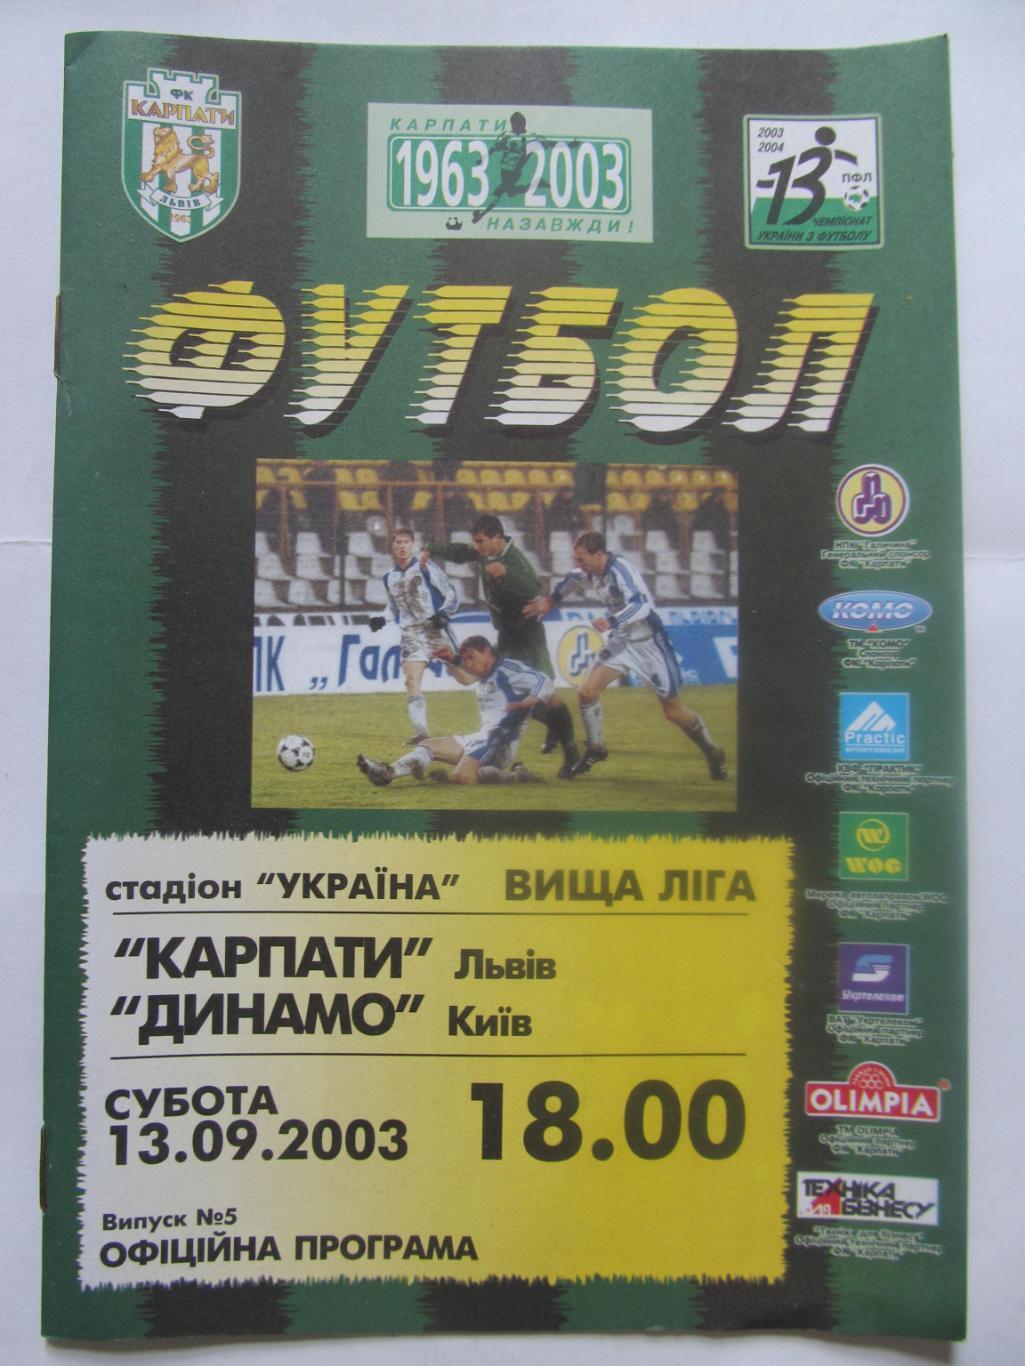 Карпати Львів - Динамо Київ.13.09.2003.*.